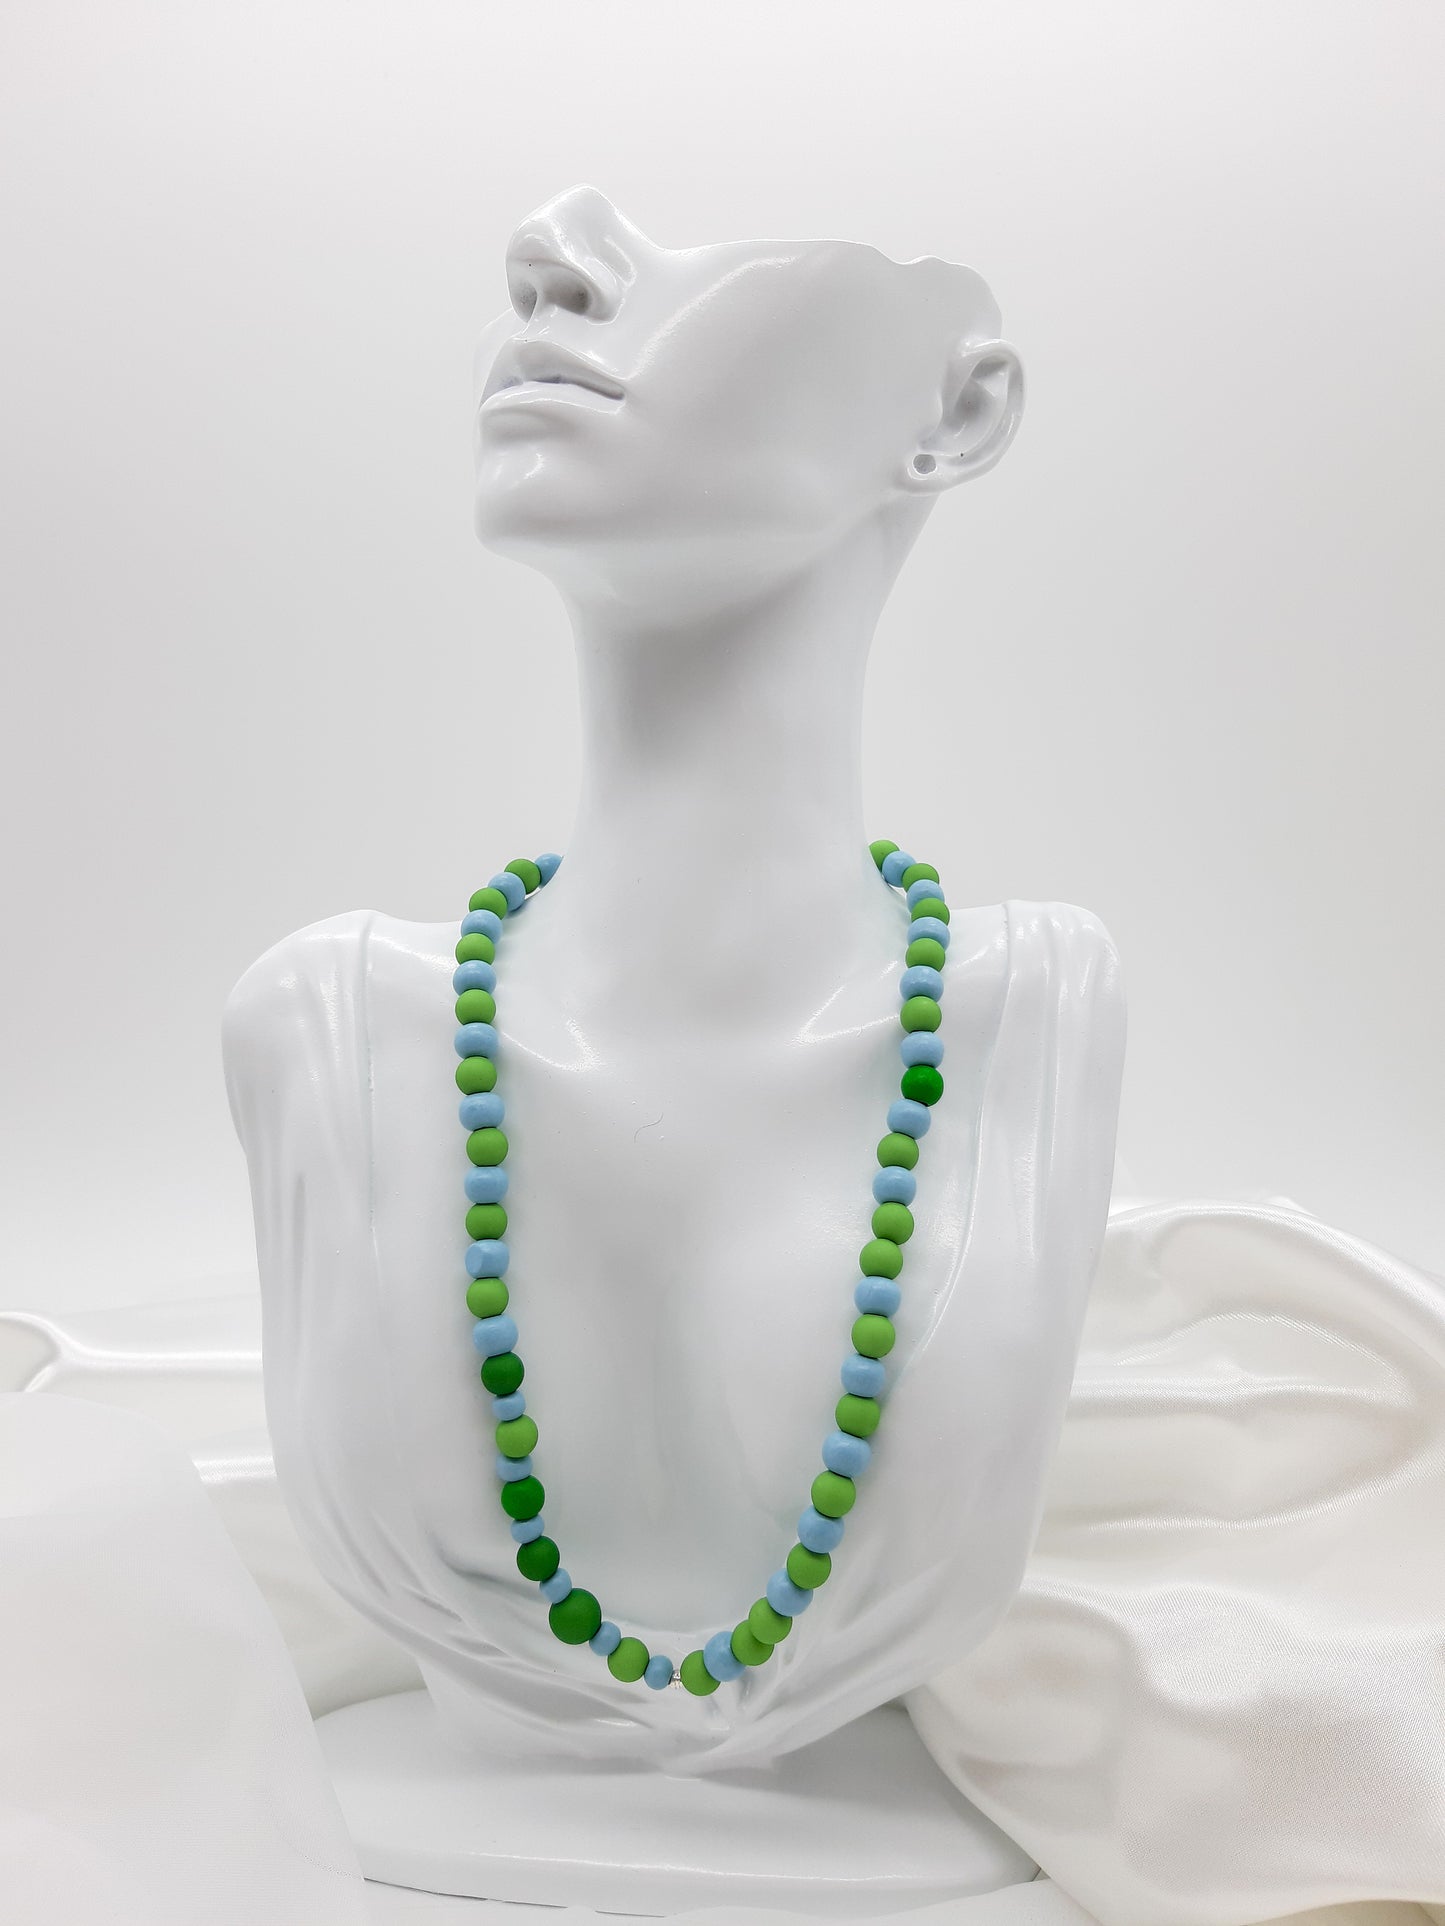 Halskette mit gefädelten Holz- und Kunststoffperlen, blau-grün